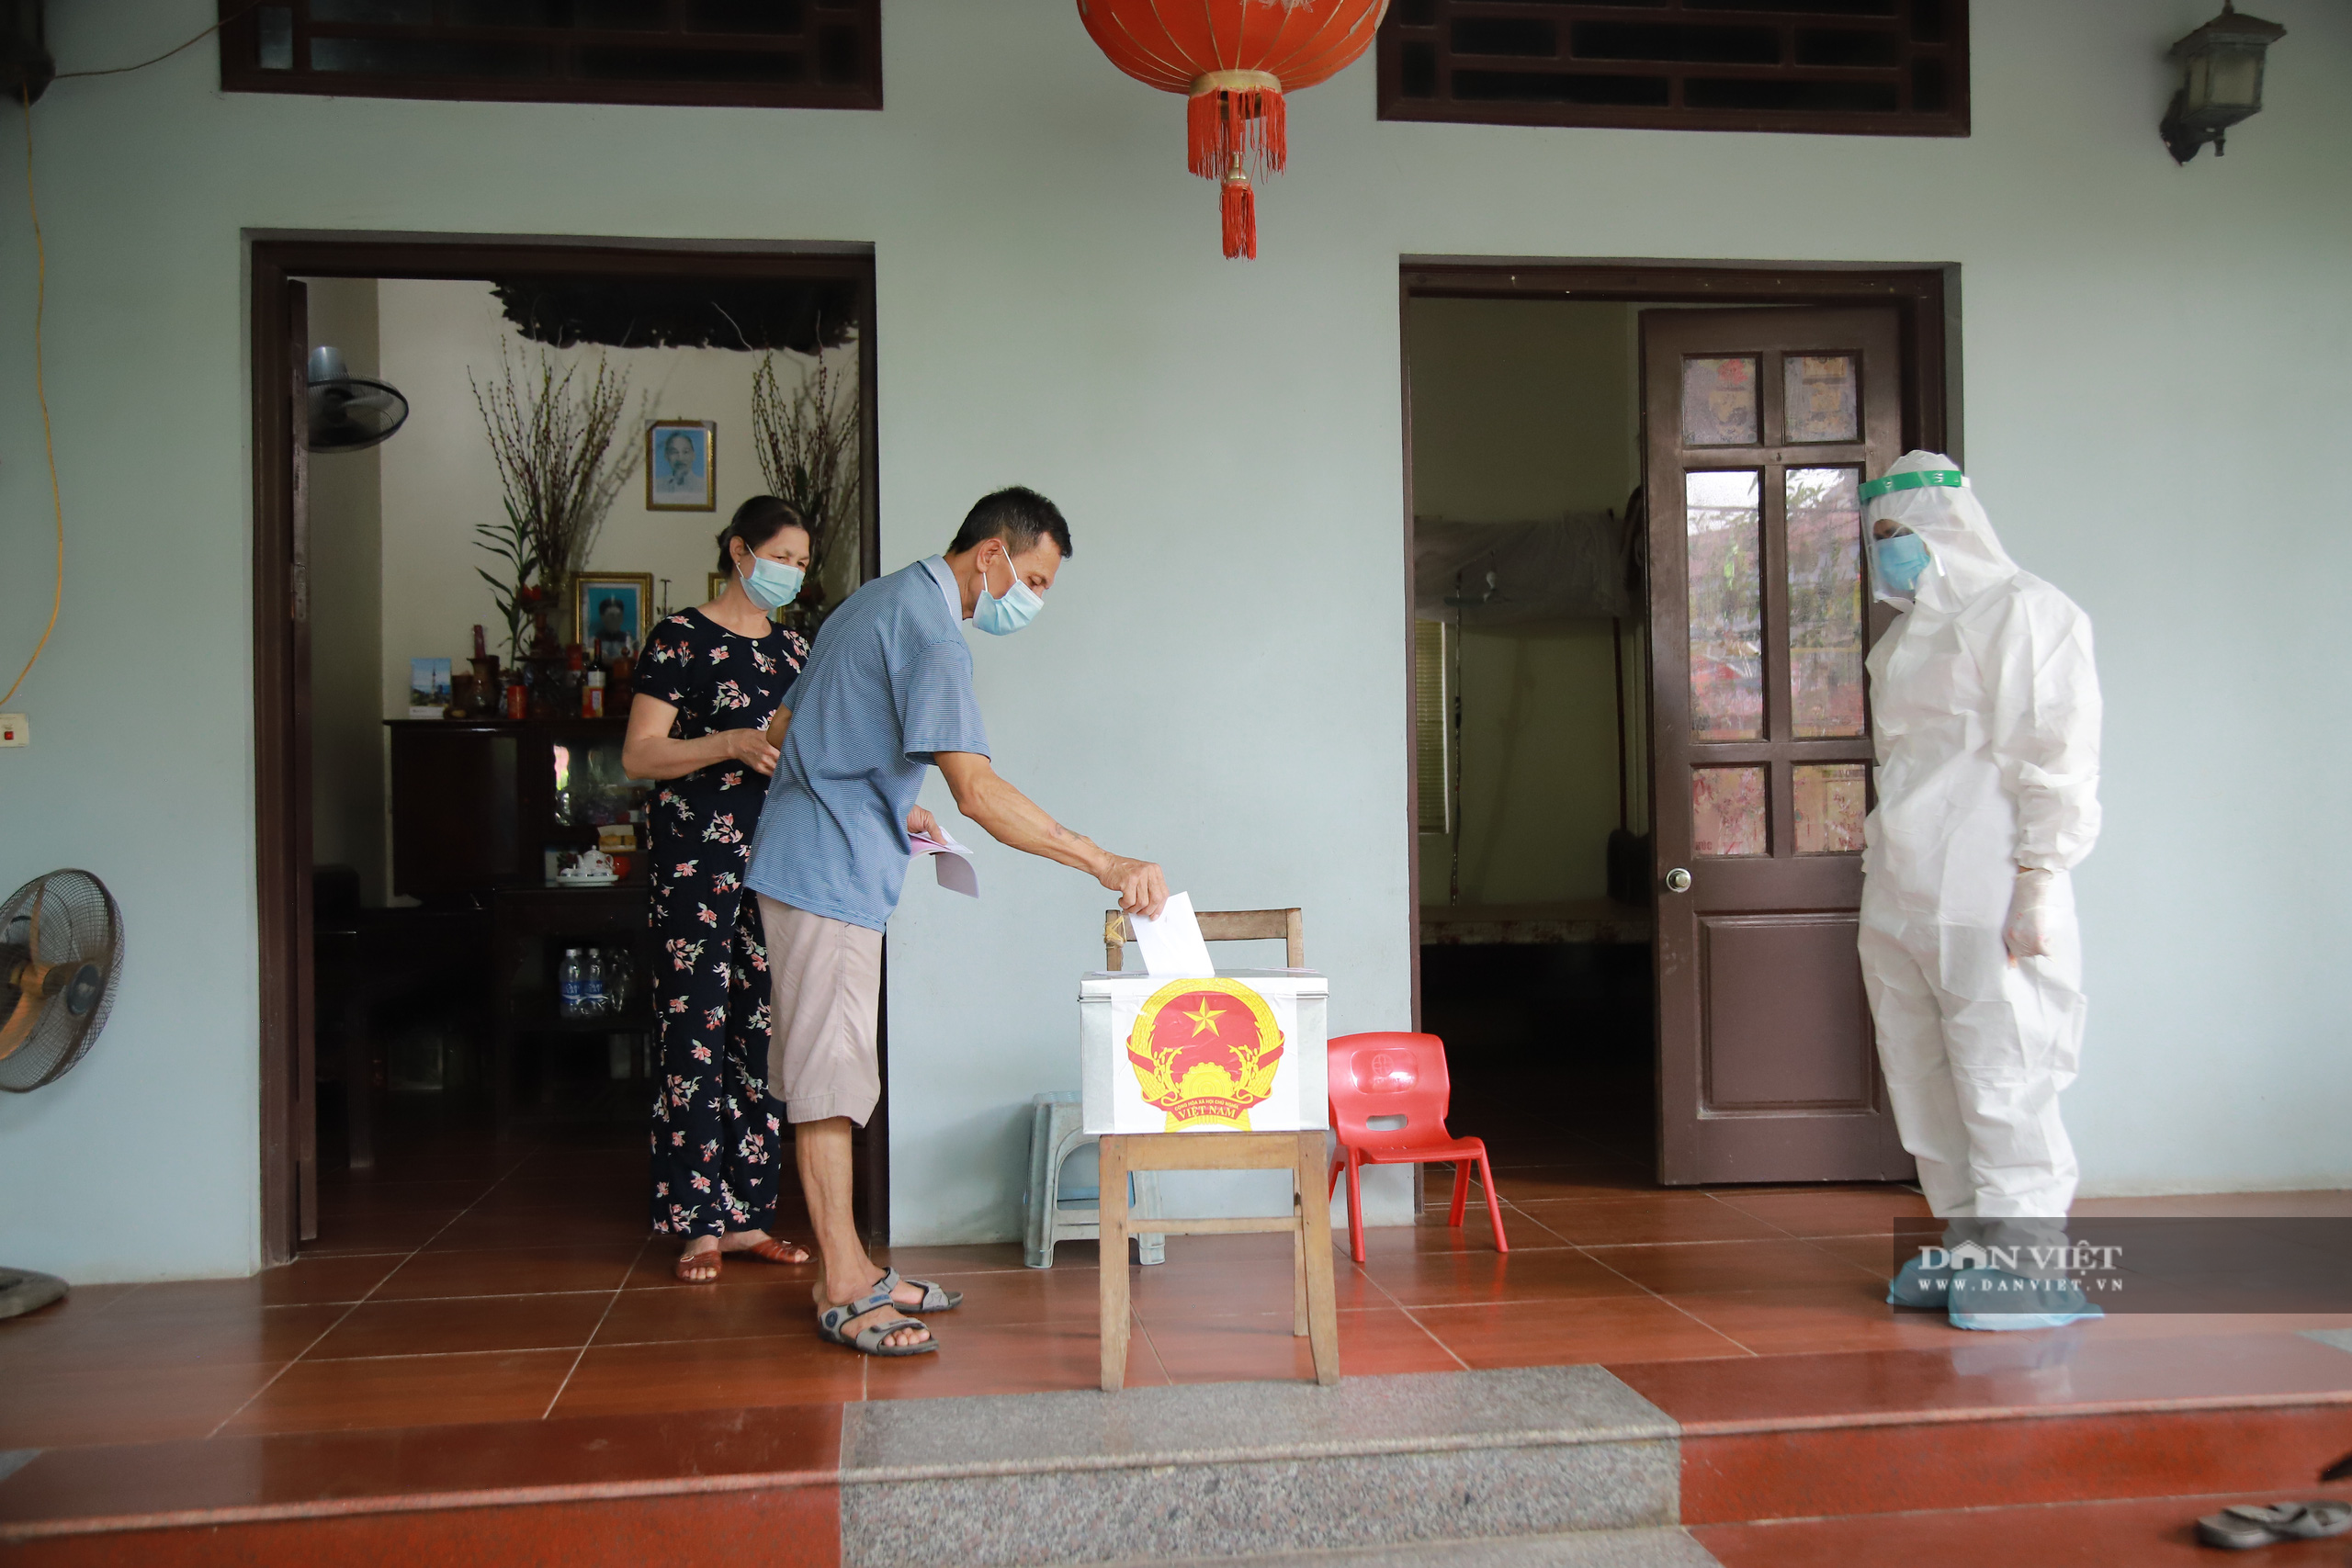 Bắc Ninh: Trải lòng của cử tri F1 giữa tâm dịch Covid-19 ở Mão Điền - Ảnh 4.